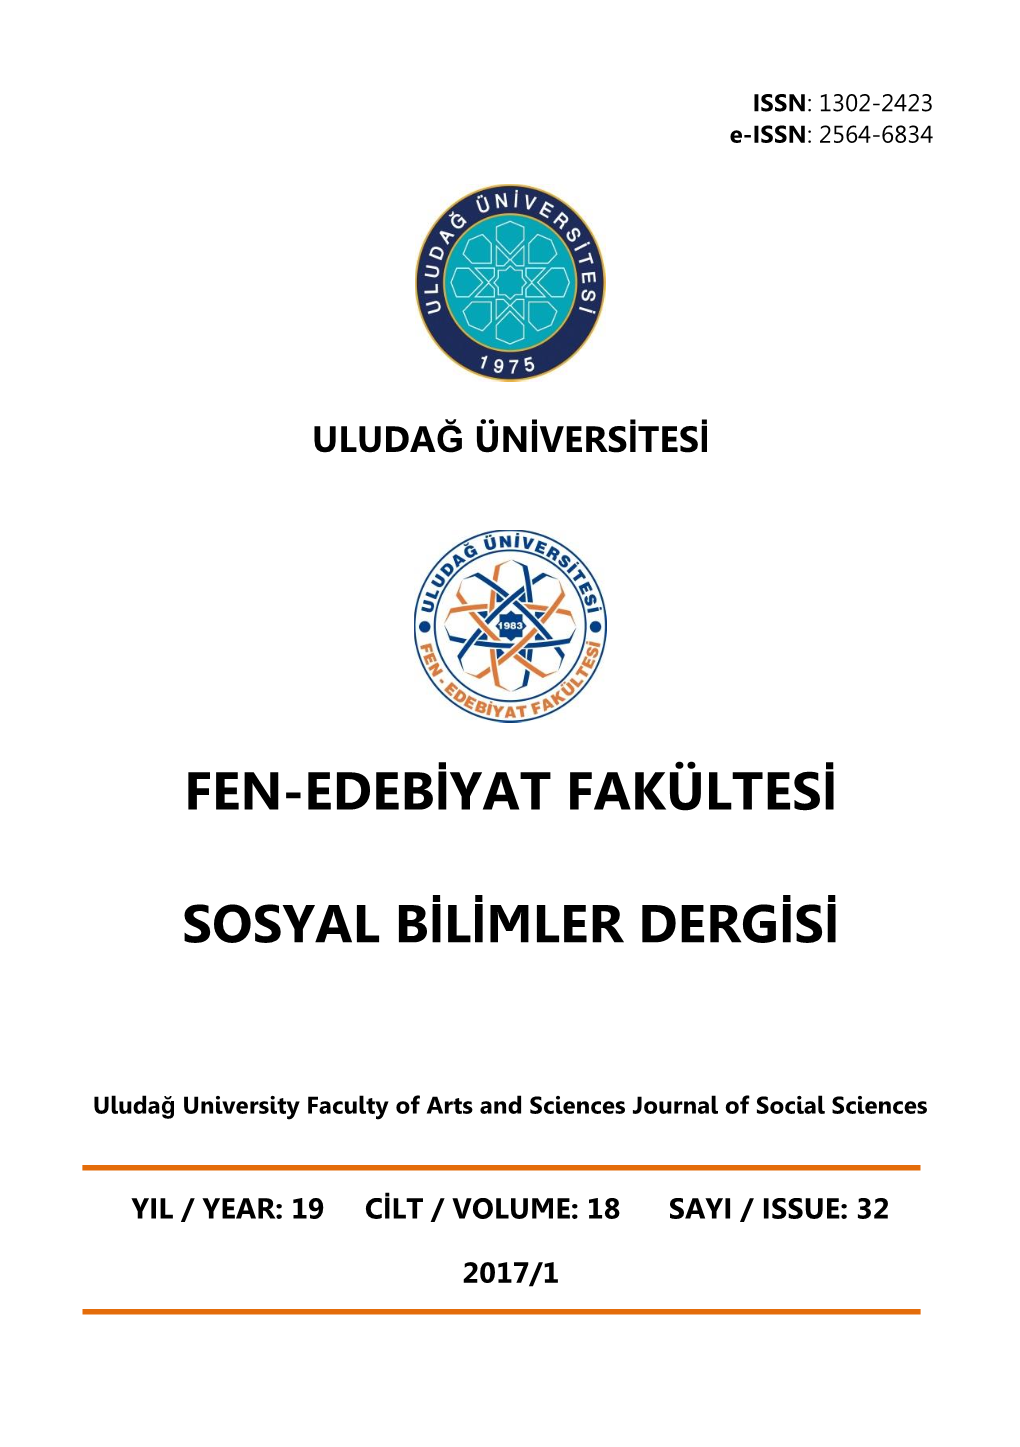 Fen-Edebiyat Fakültesi Sosyal Bilimler Dergisi